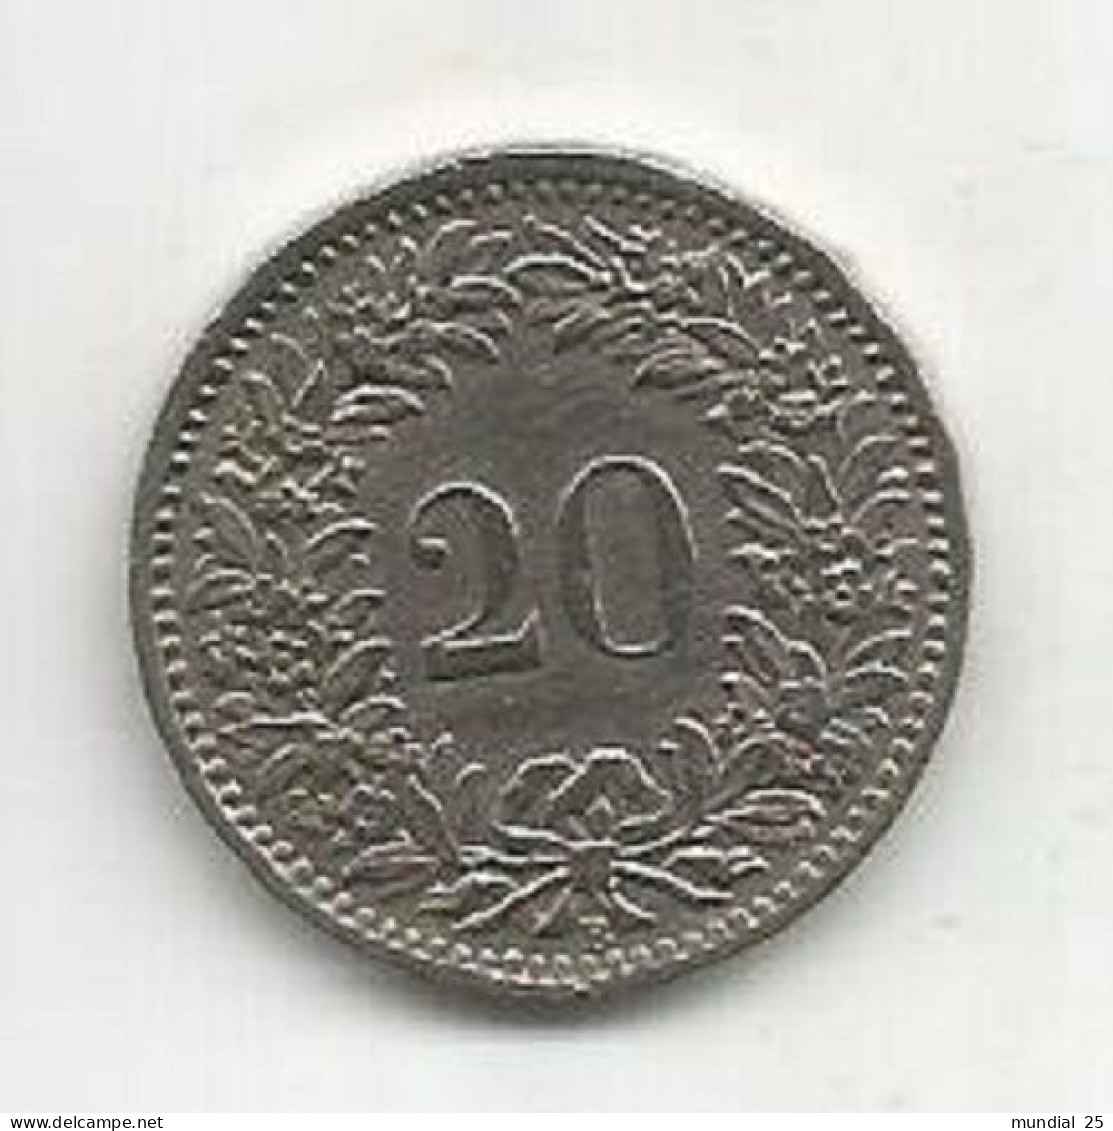 SWITZERLAND 20 RAPPEN 1947 B - 20 Centimes / Rappen